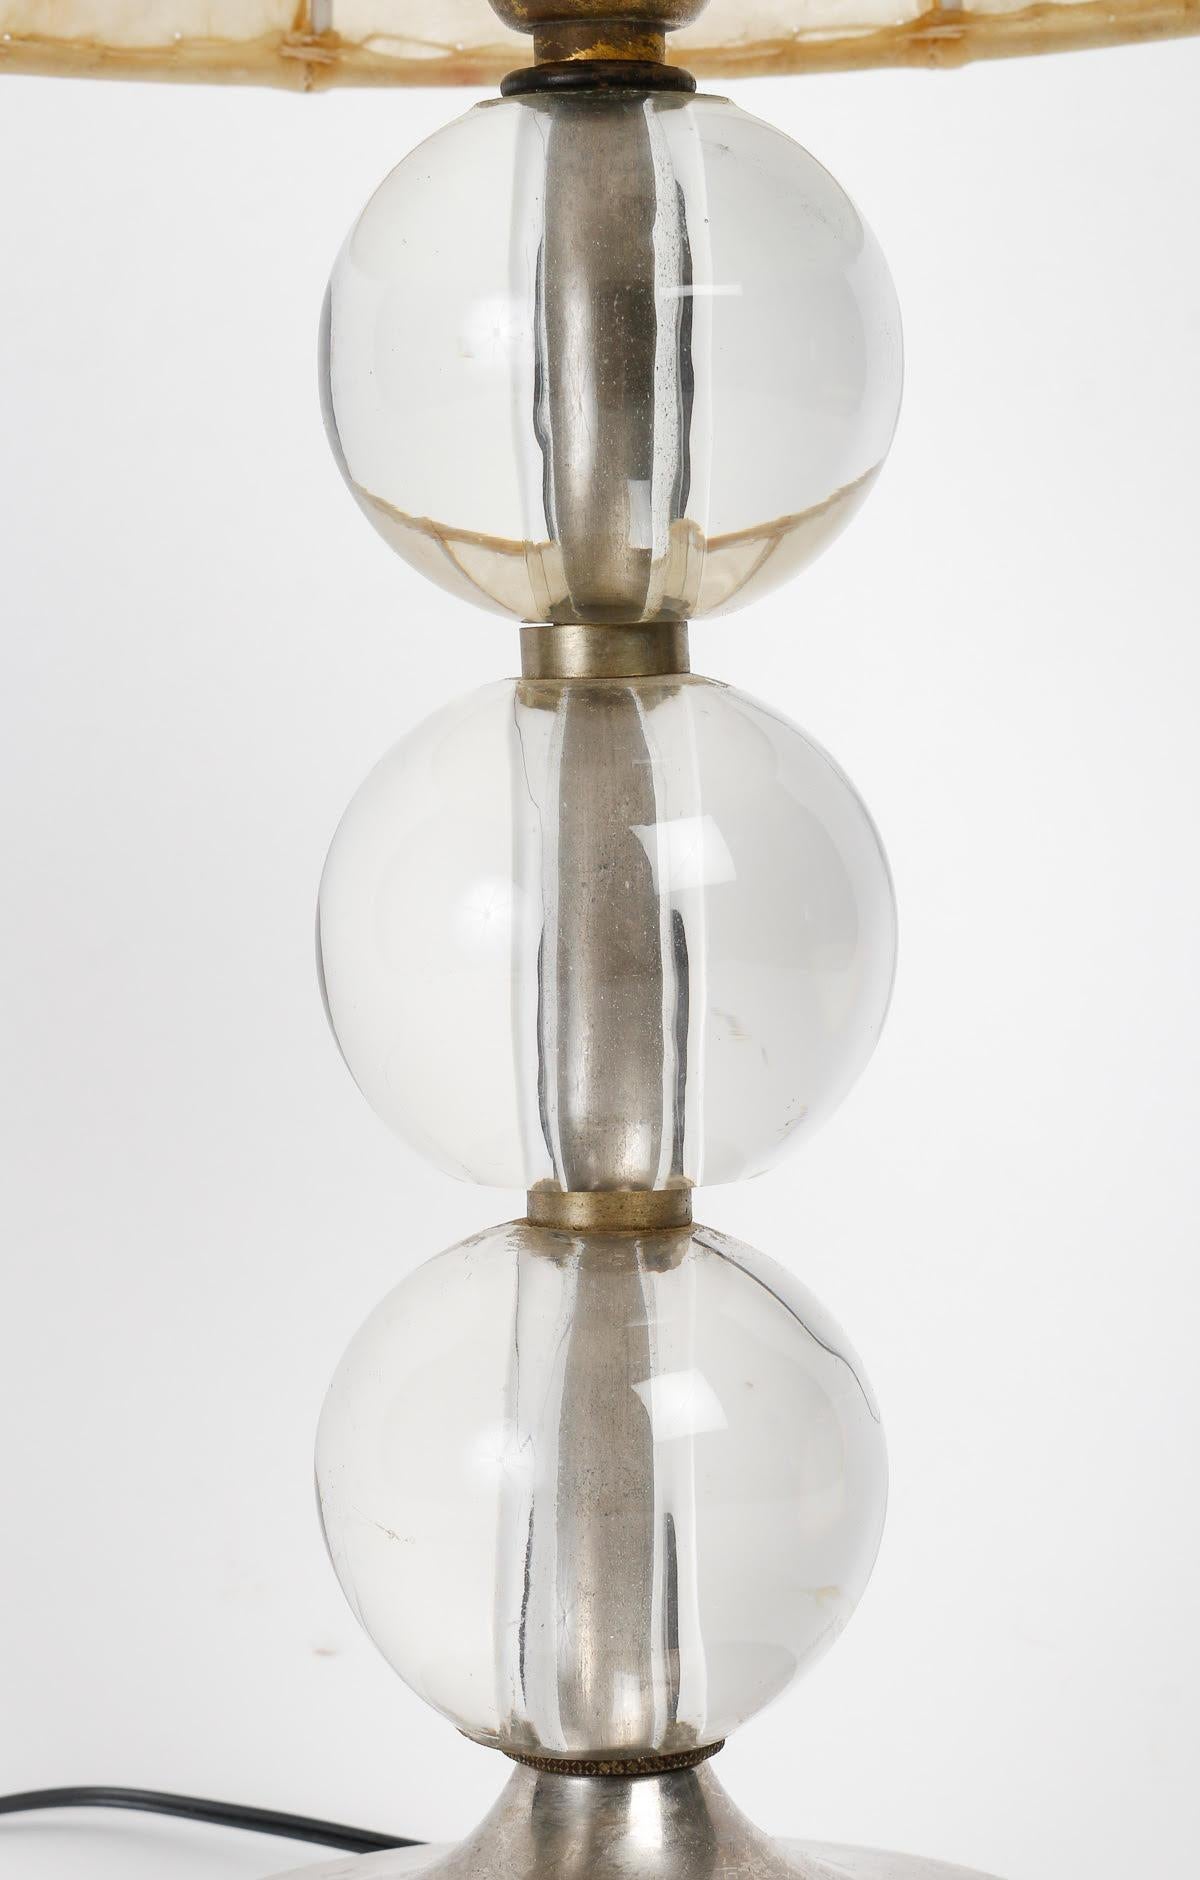 Lampe de table par Adnet, circa 1930, période Art Déco.

Lampe de table, 1930, période Art Déco par Adnet en boule de cristal, base en bronze nickelé et abat-jour en parchemin.

H : 45cm, p : 23cm